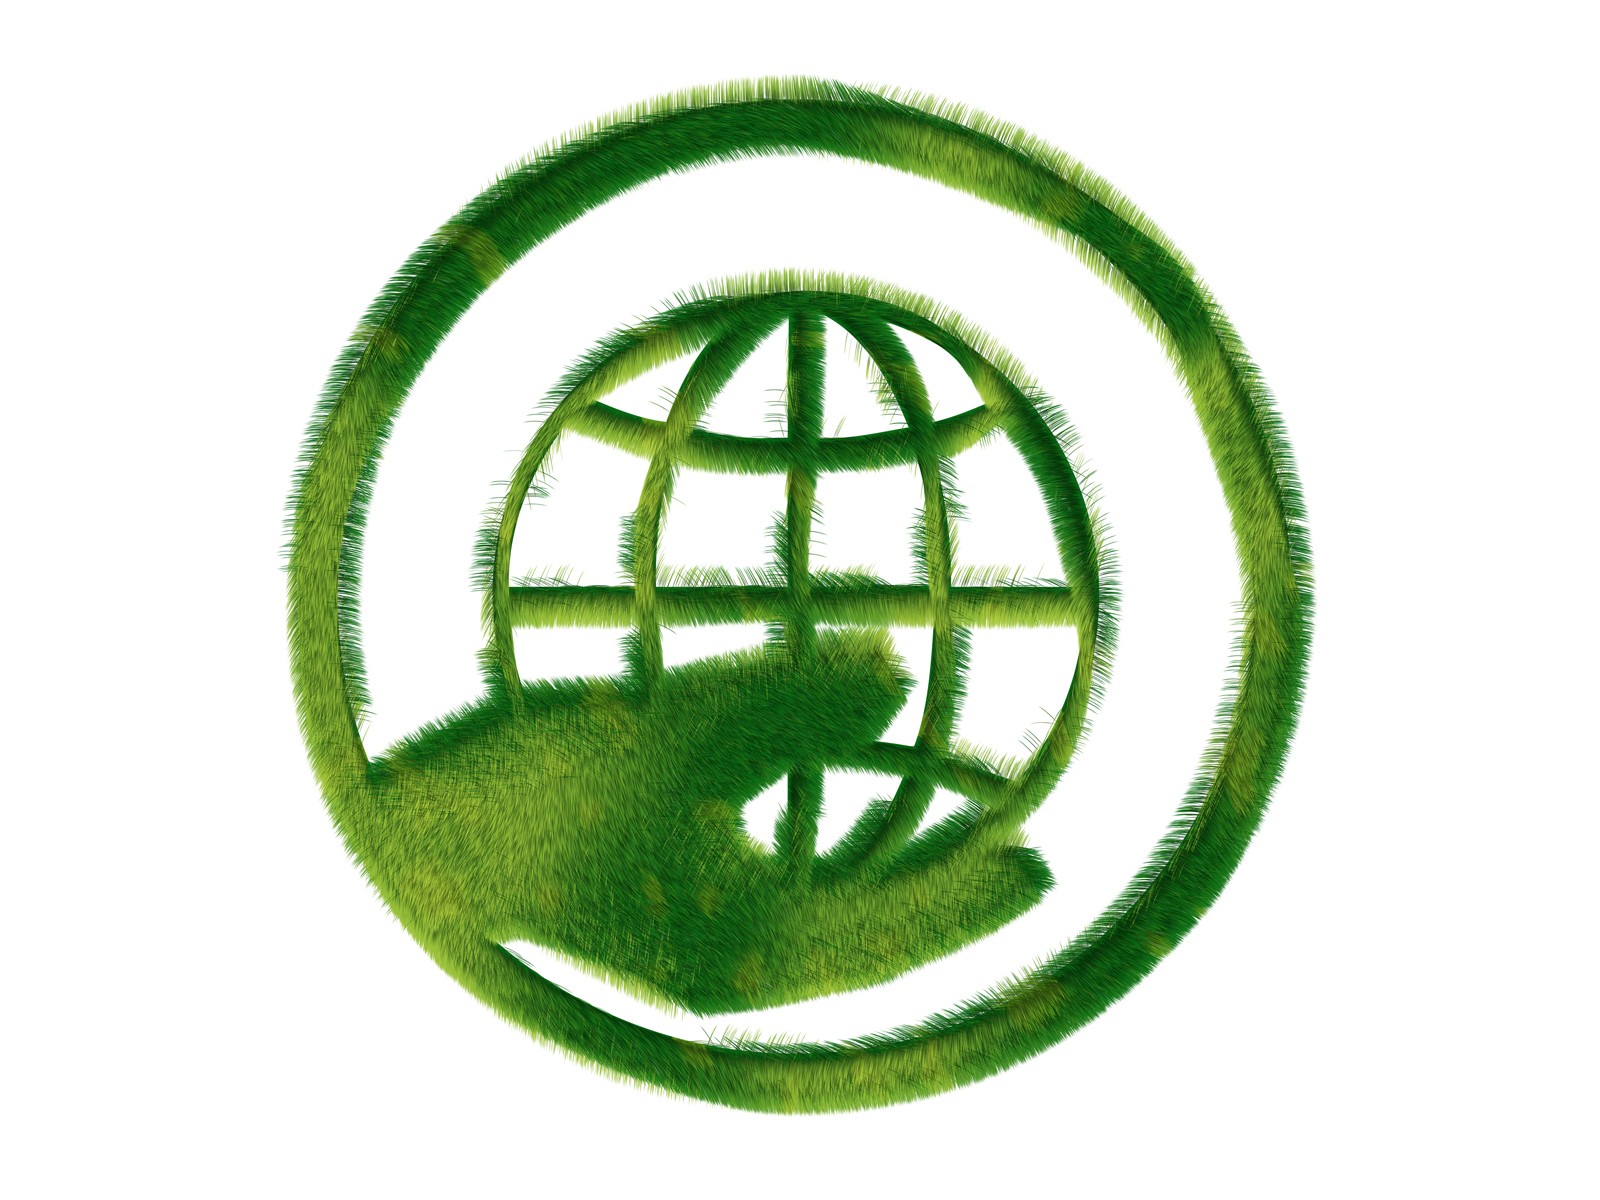 壁纸1600x1200 地球生态 草地组成的绿色环保标志图片 1920 1200壁纸 绿色和平环保标志-循环利用壁纸 绿色和平环保标志-循环利用图片 绿色和平环保标志-循环利用素材 插画壁纸 插画图库 插画图片素材桌面壁纸